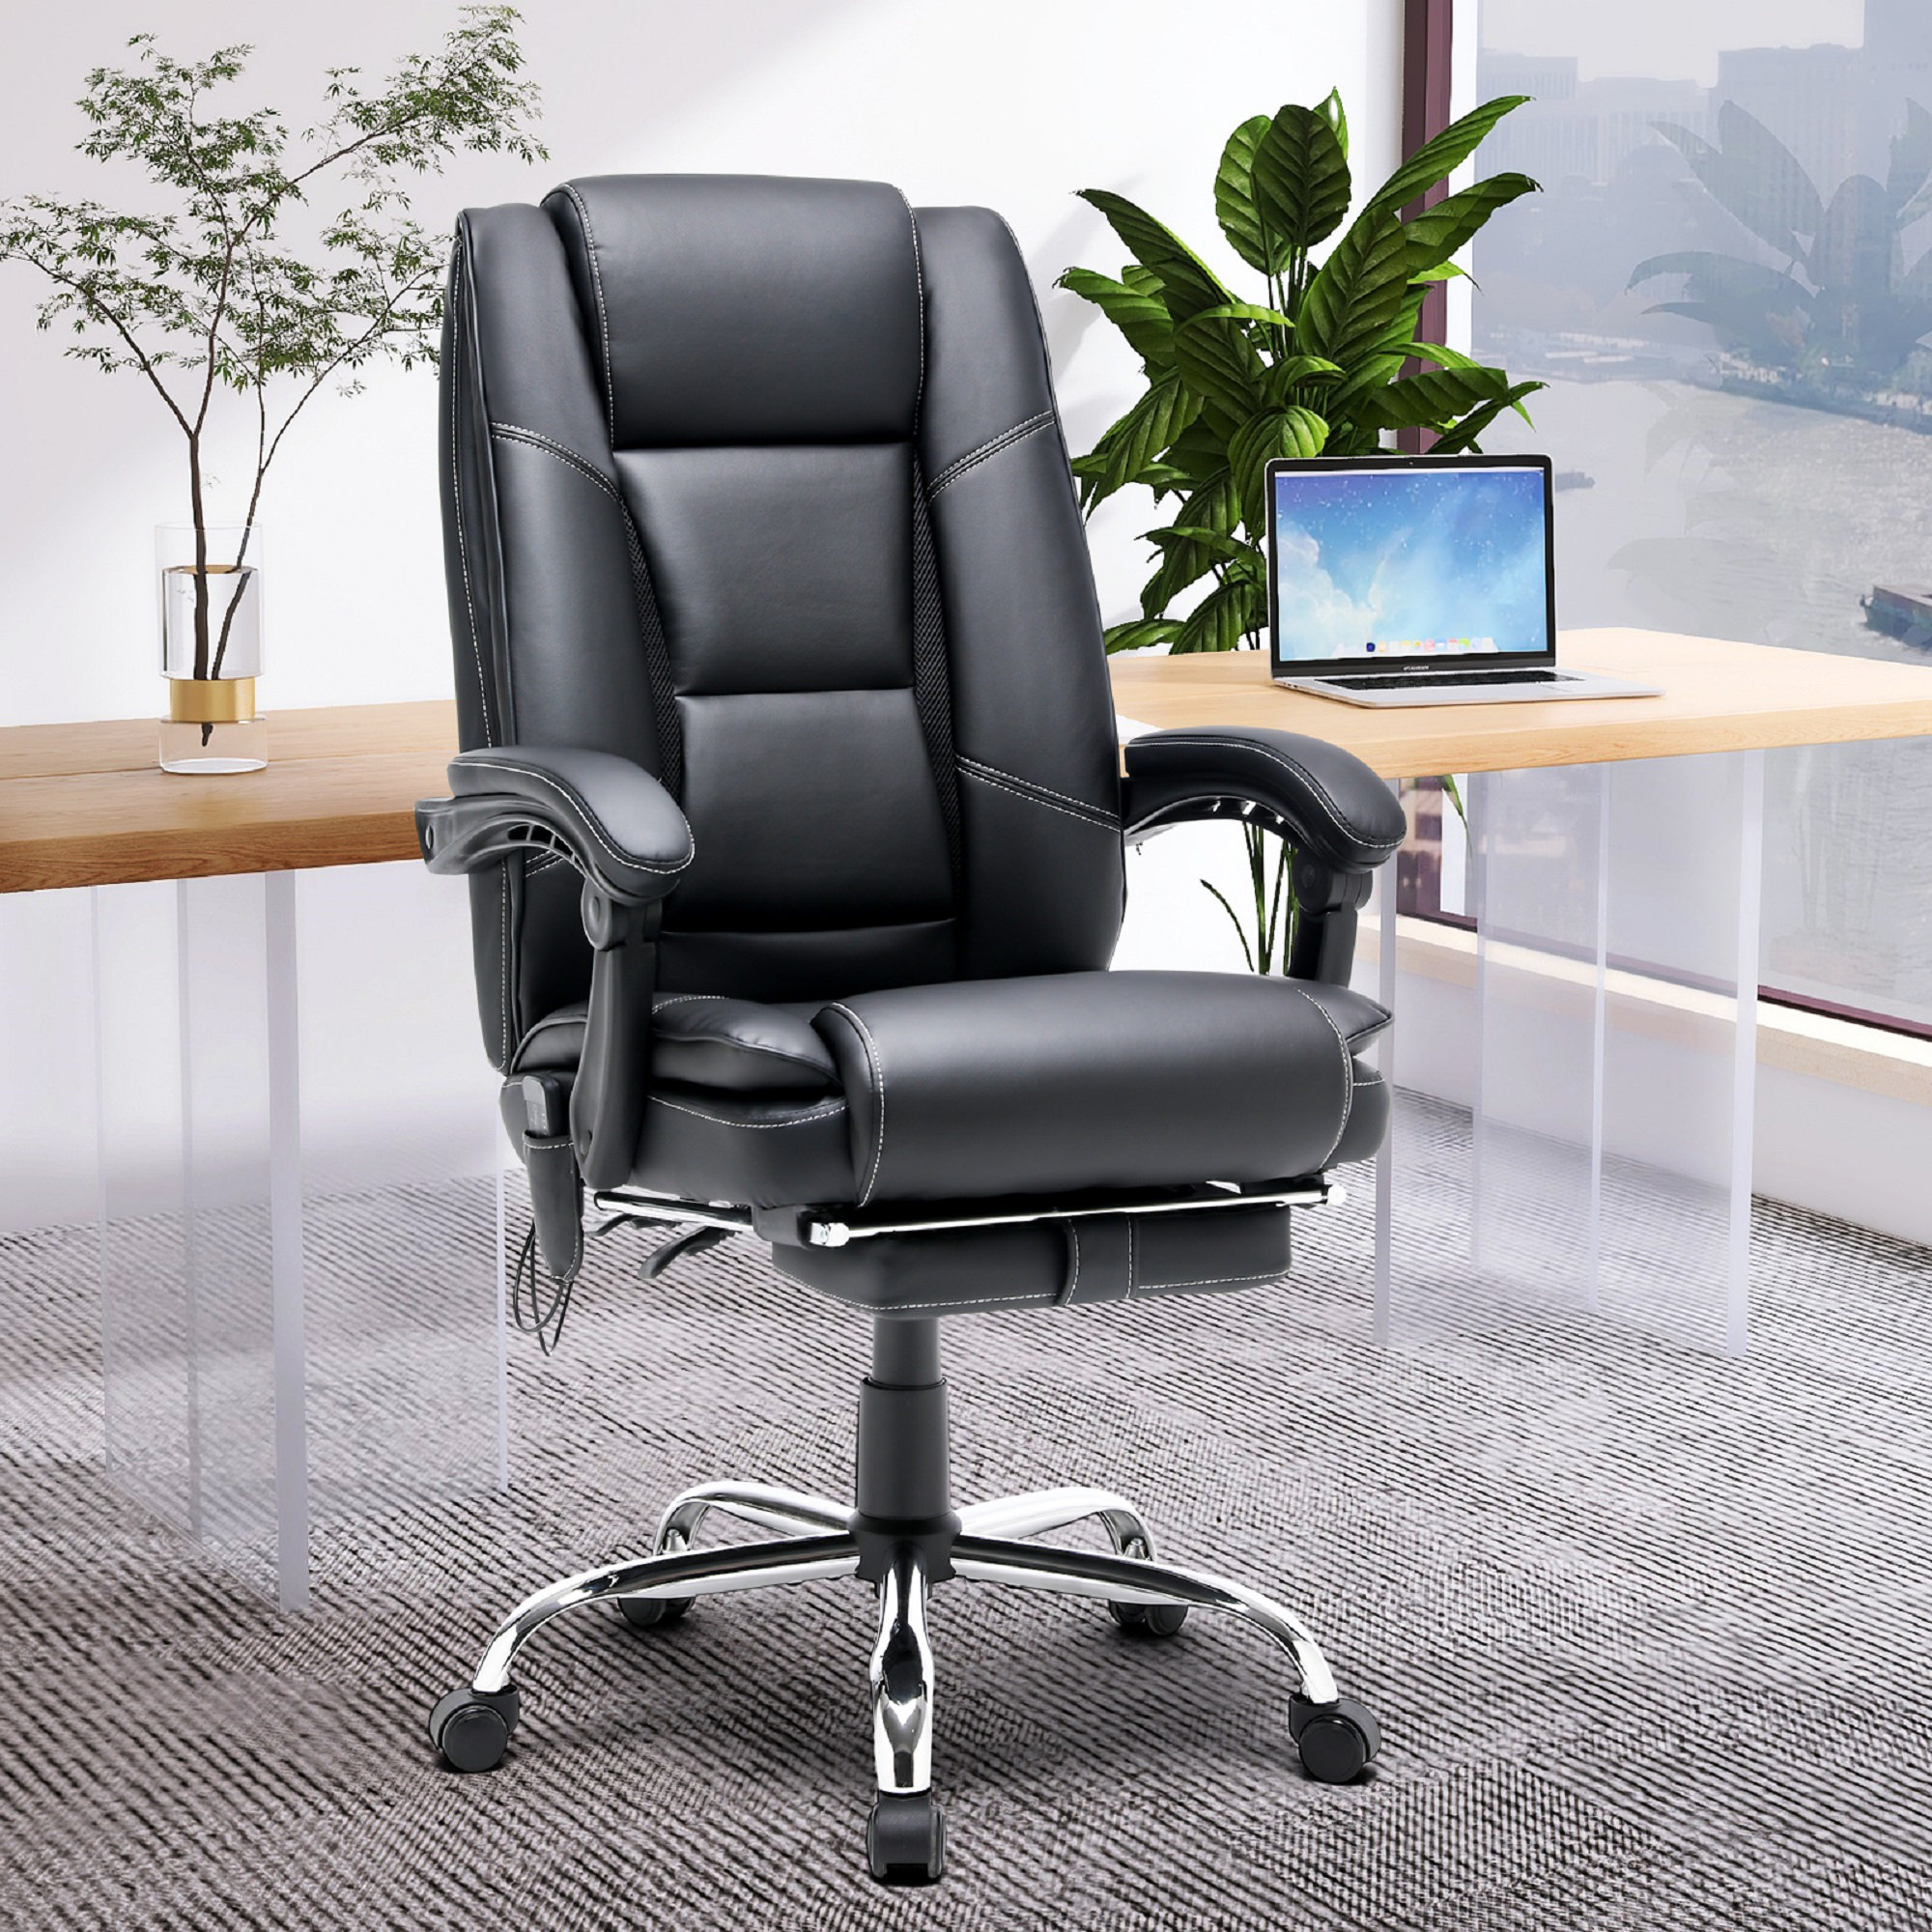 https://assets.wfcdn.com/im/92246195/compr-r85/2185/218538042/jordon-lee-ergonomic-heated-massage-executive-chair.jpg